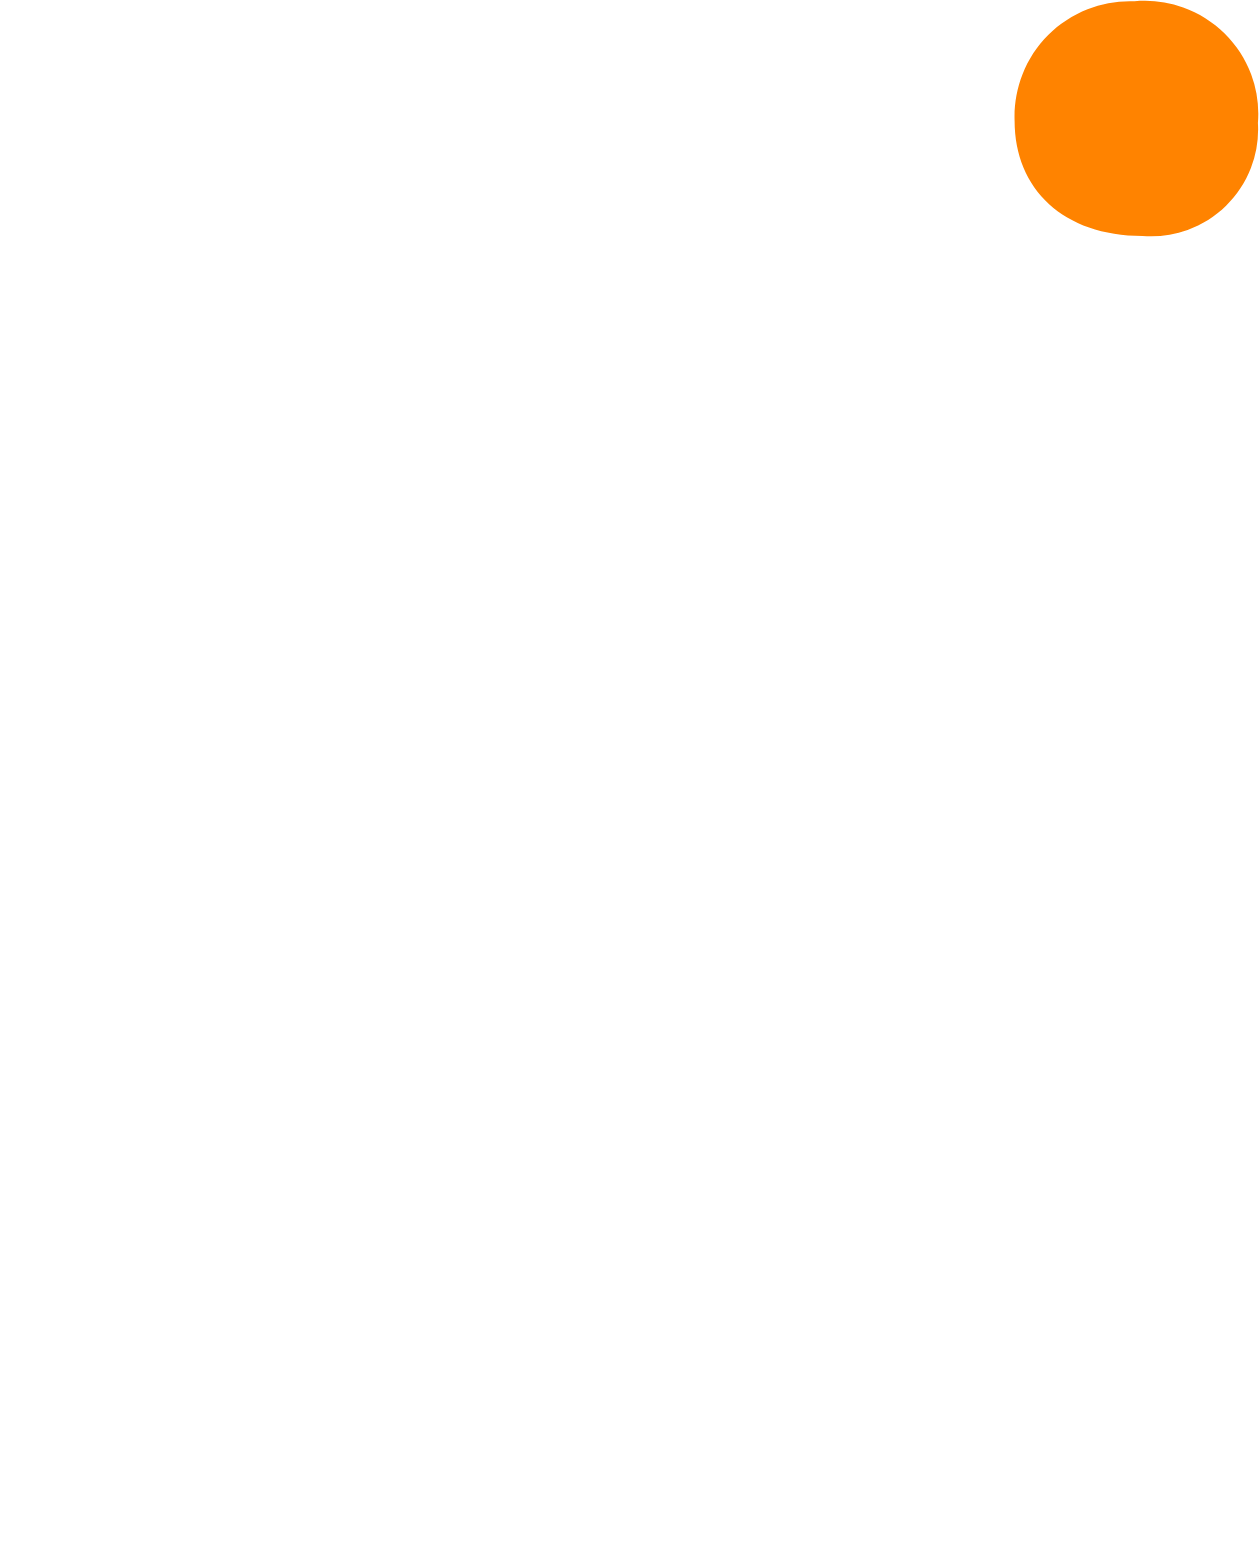 Sientra logo for dark backgrounds (transparent PNG)